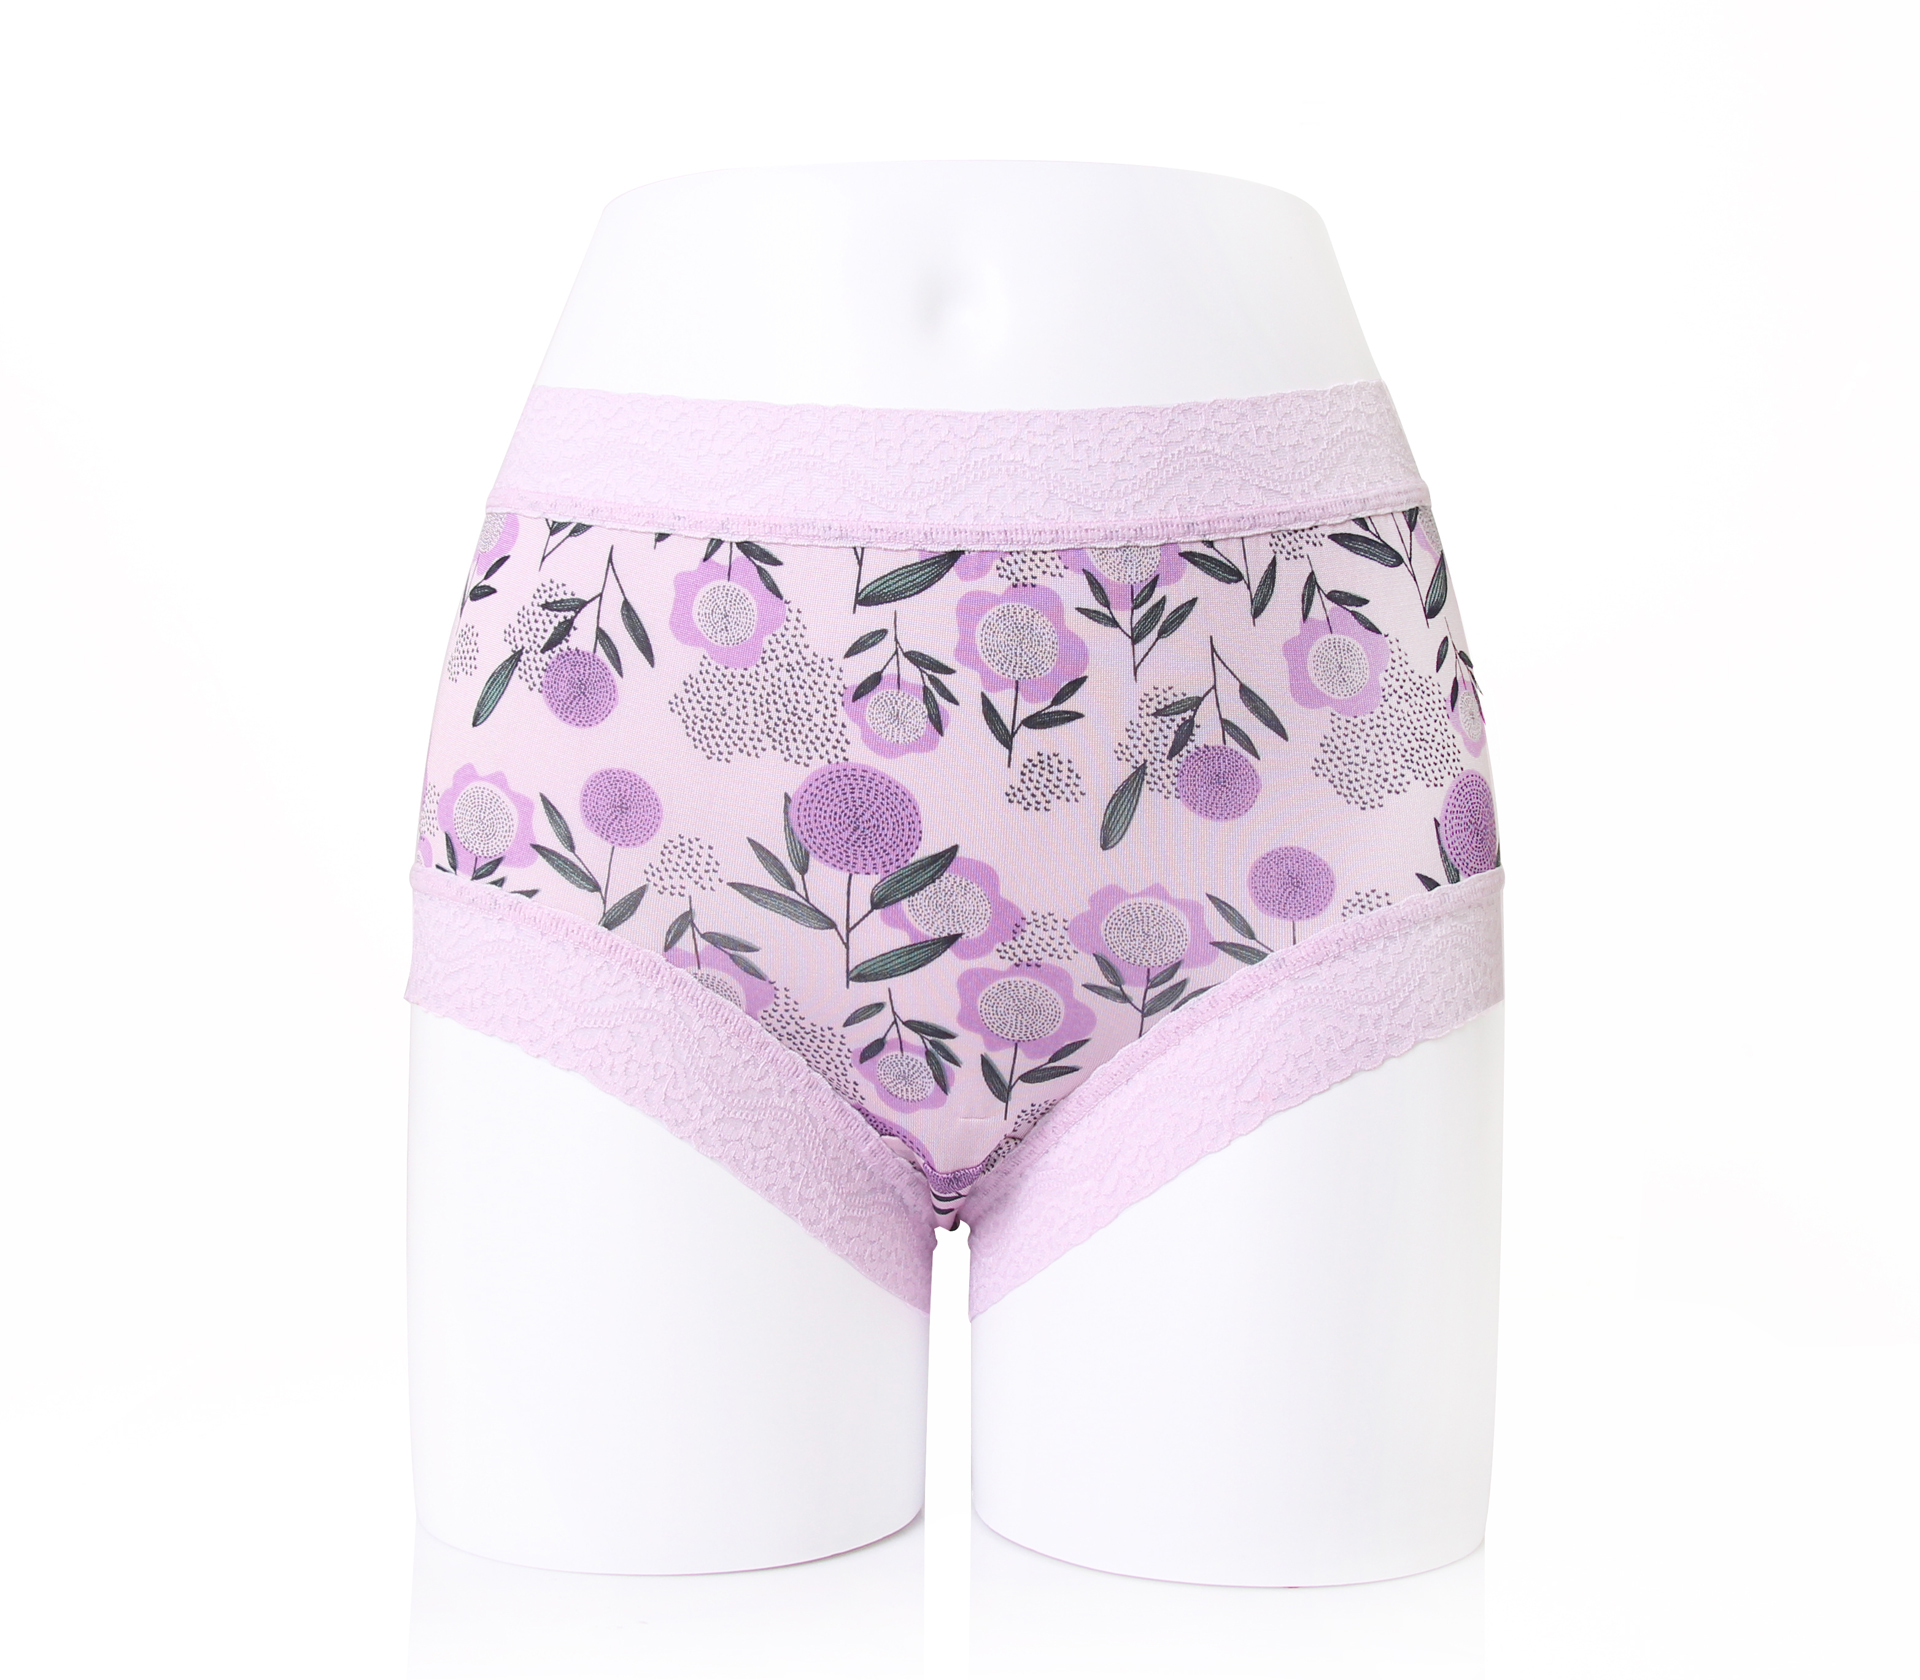 闕蘭絹日本花卉100%蠶絲內褲 - 88116 (紫)